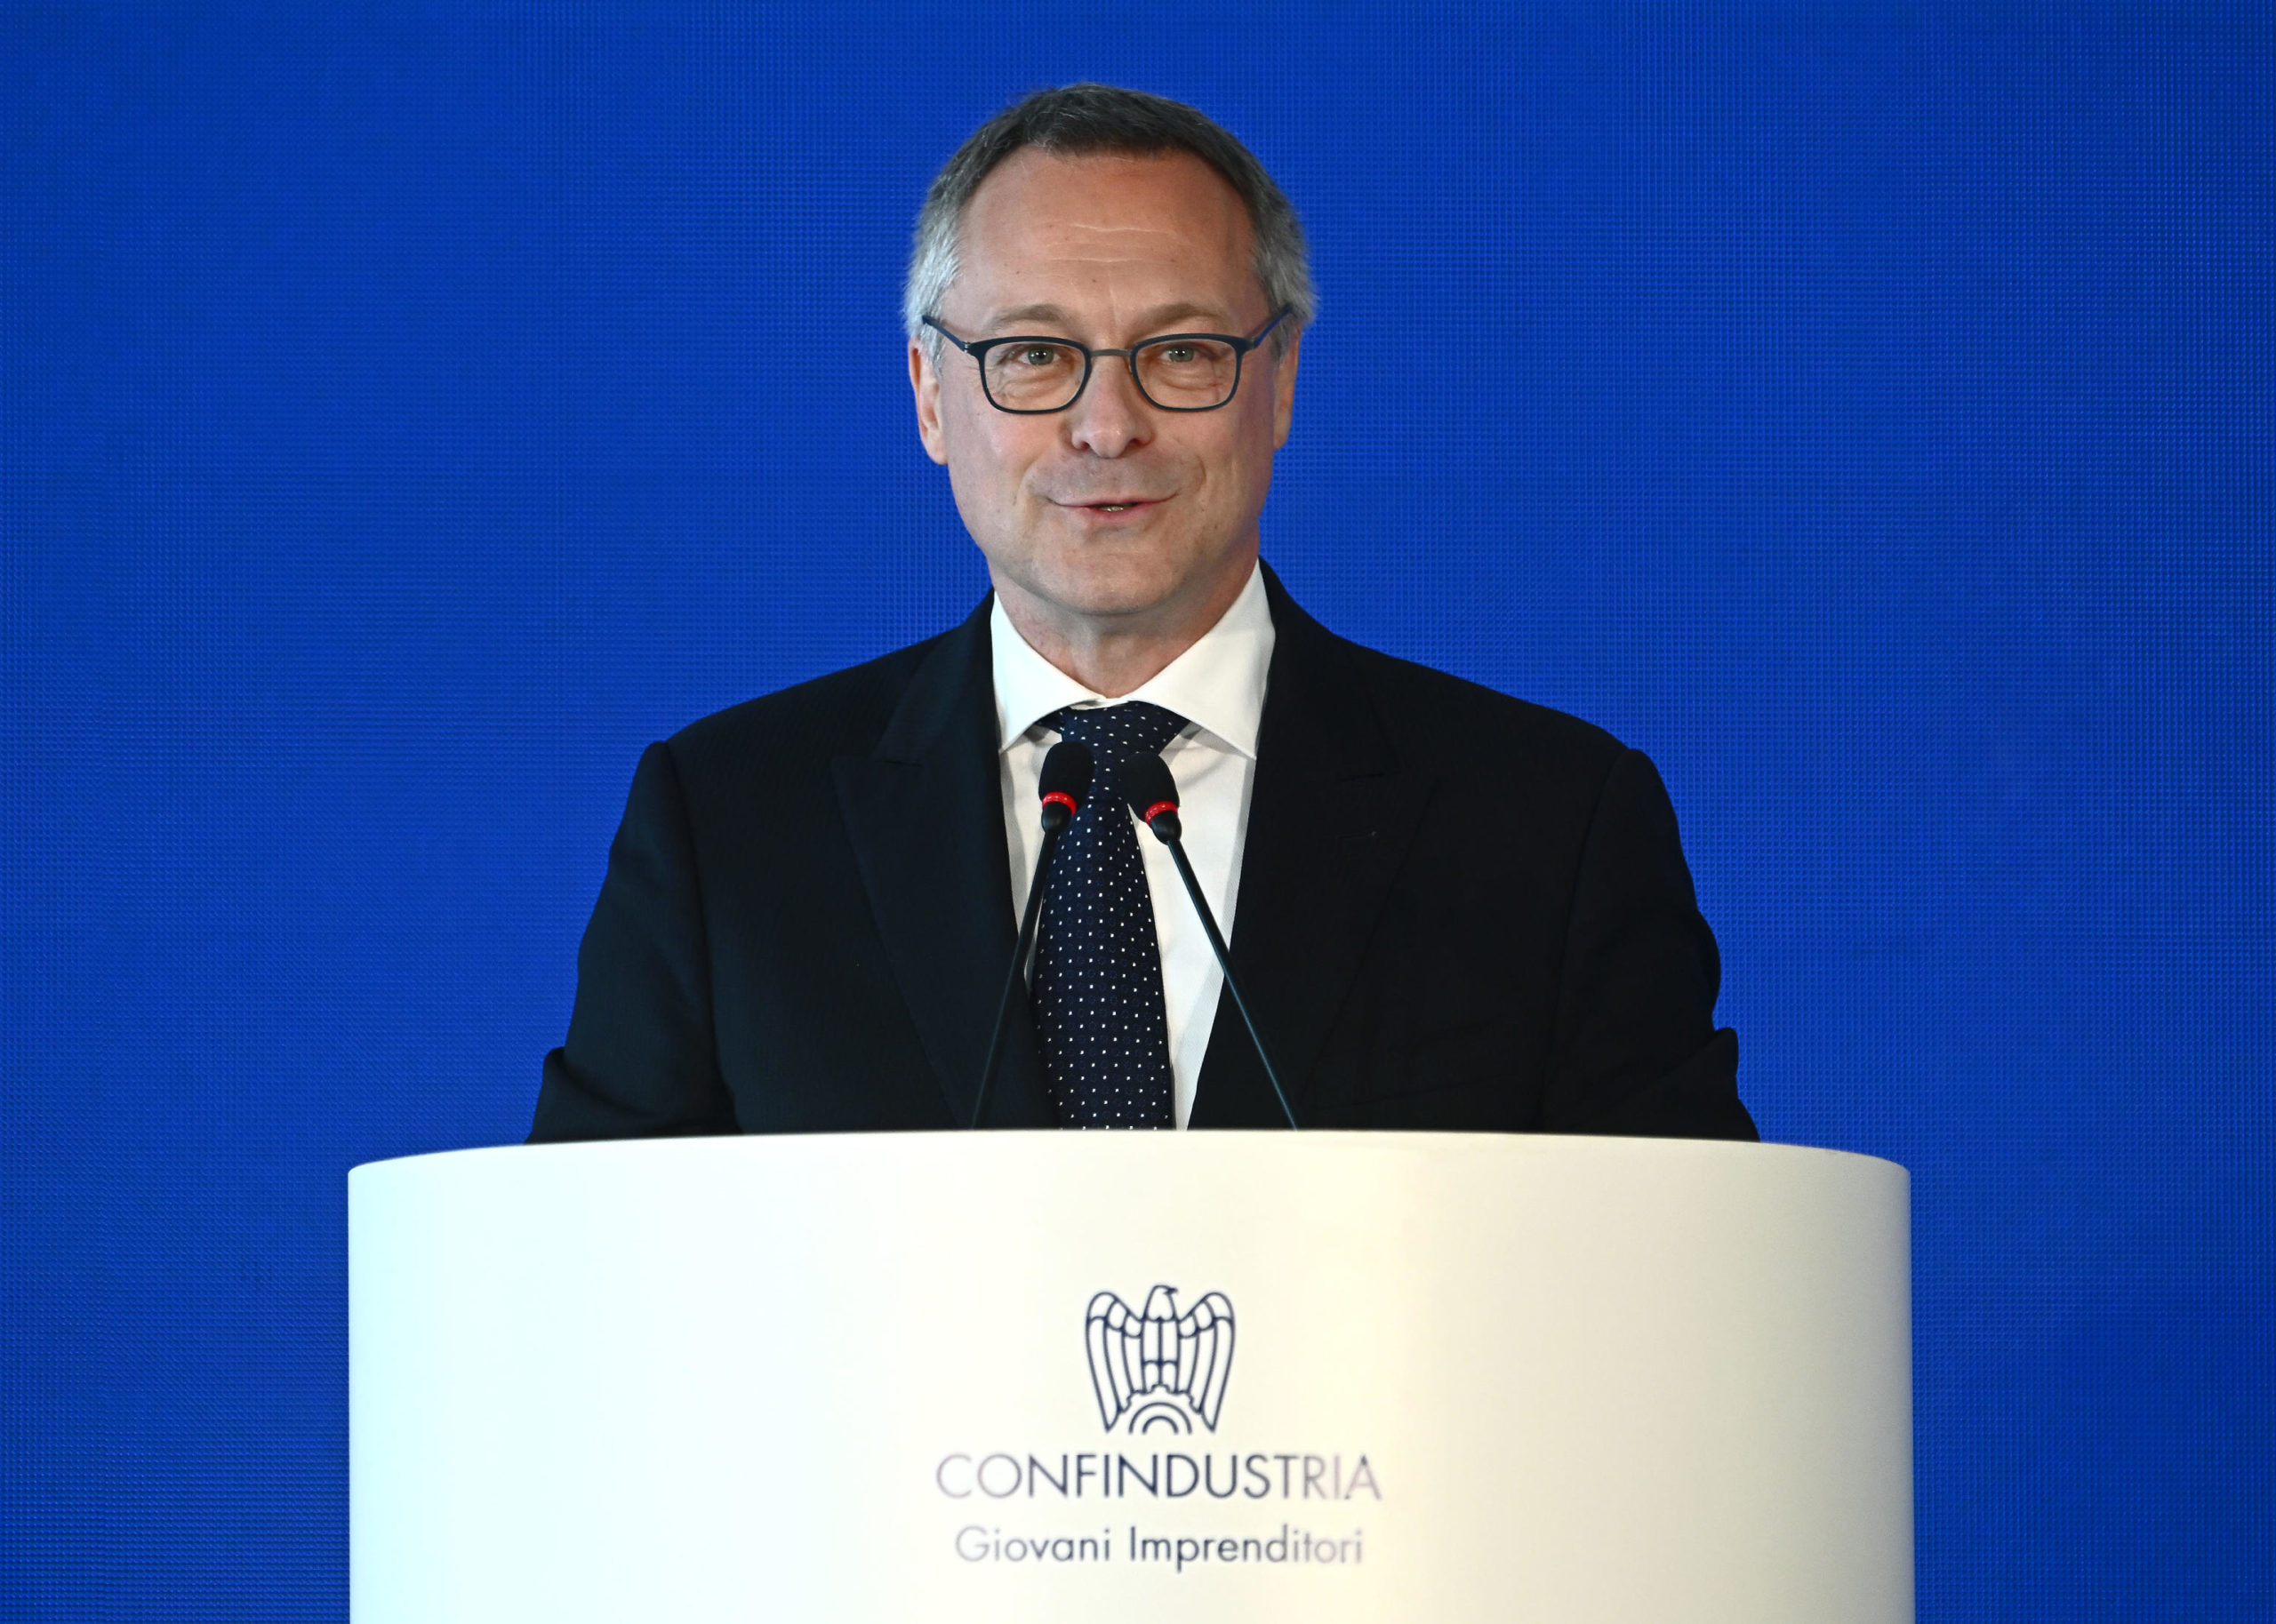 Il presidente di Confindustria Carlo Bonomi, durante il suo intervento alla seconda giornata del 51mo convegno Paese Europa. Genova, 25 giugno 2022.
ANSA/ LUCA ZENNARO